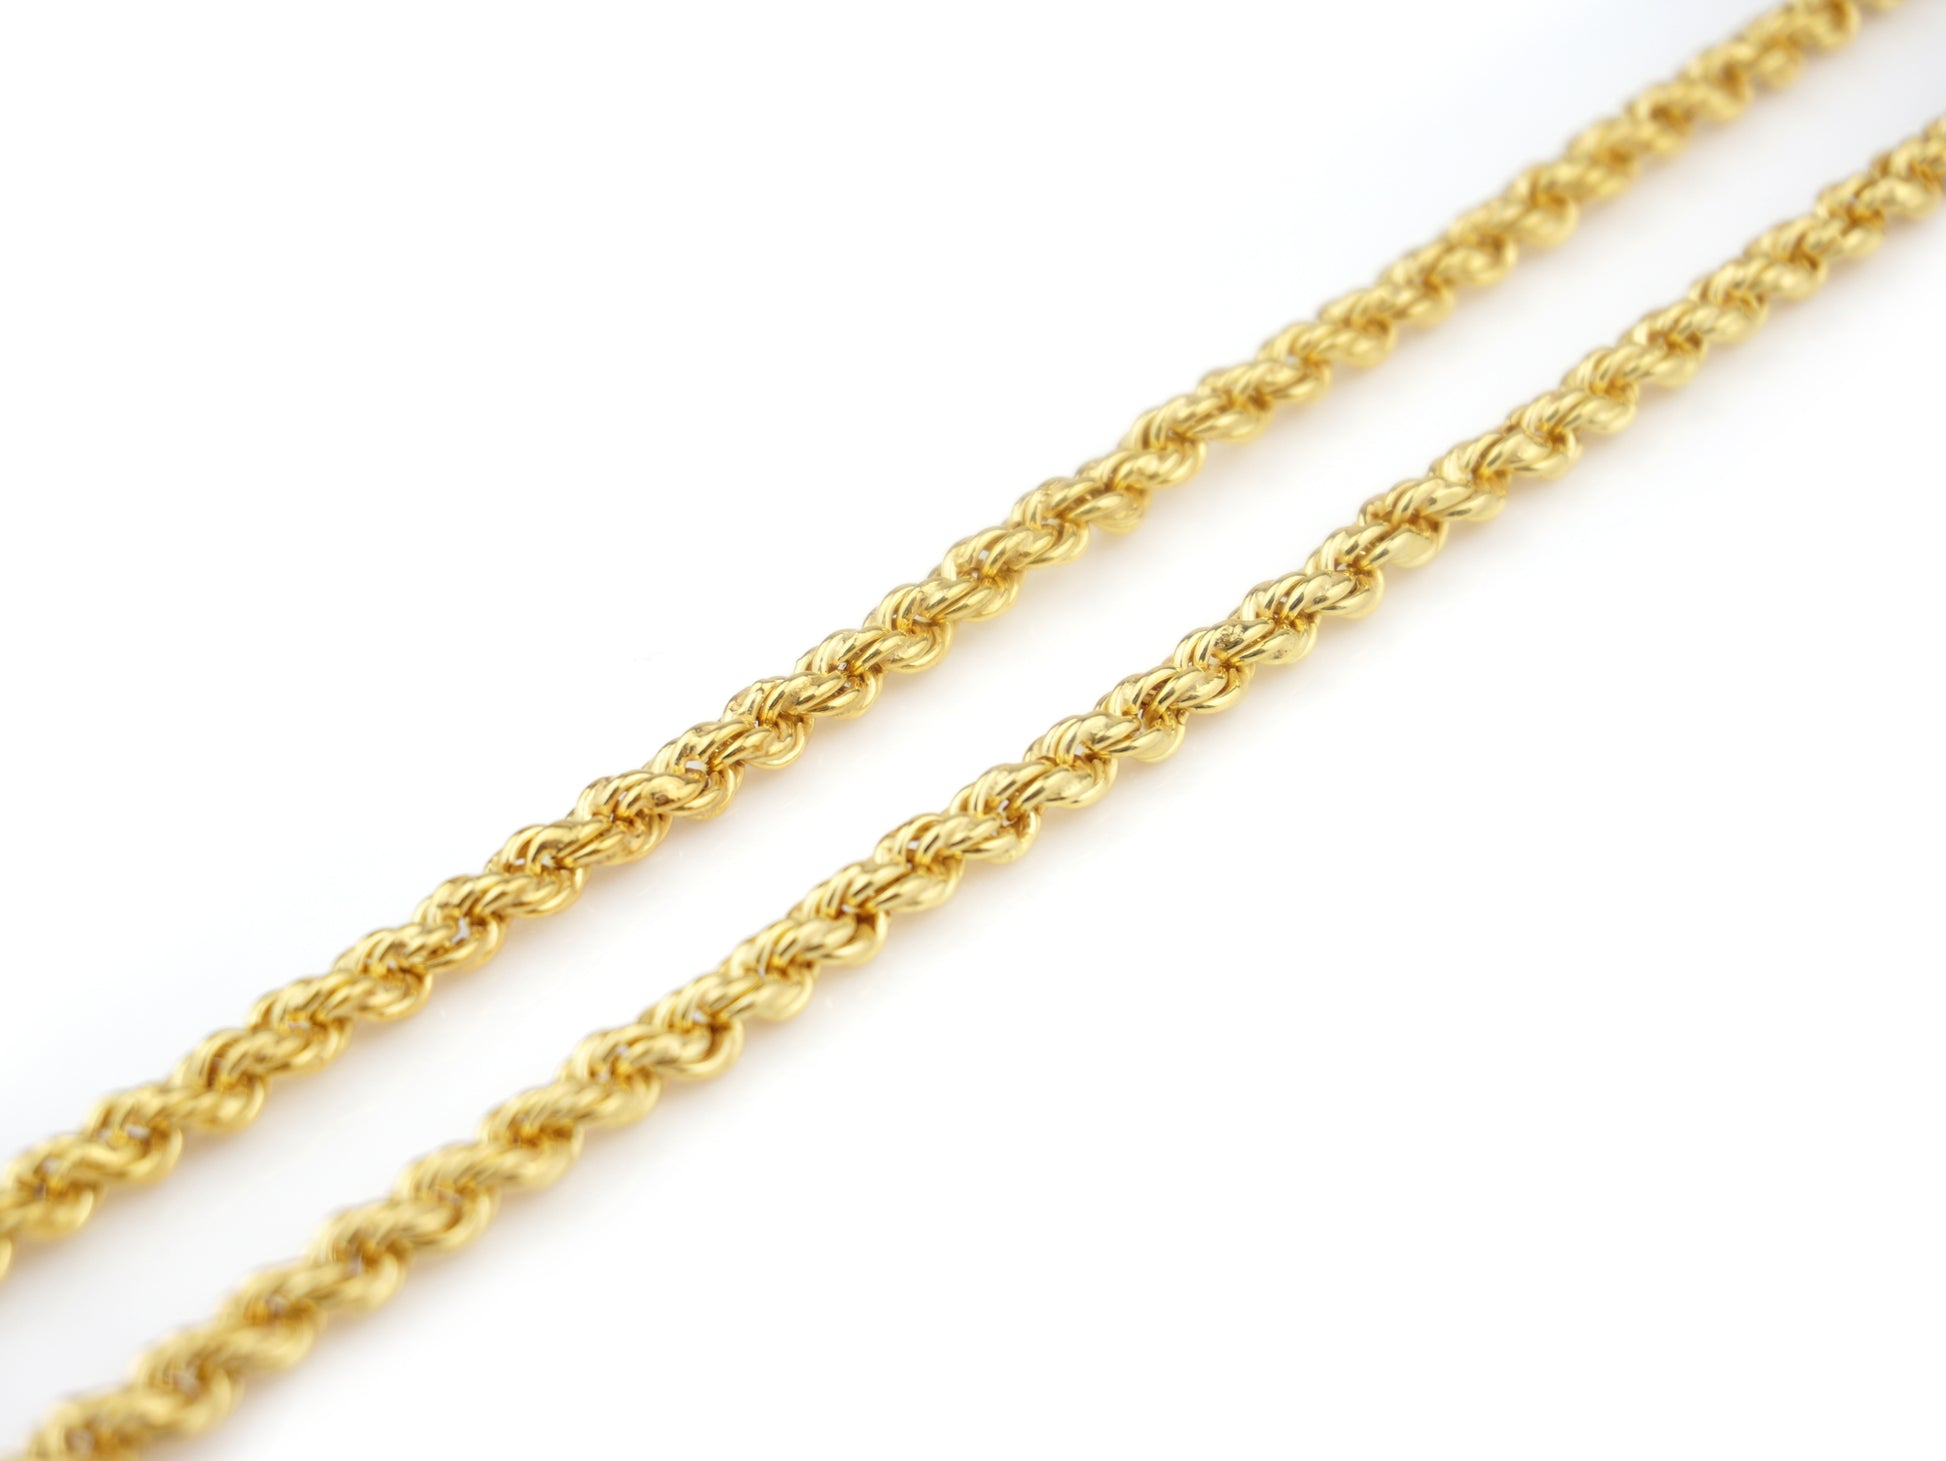 Fio "Corda" Tradicional 60 cm, Prata de Lei 925 Dourada - Pormenor